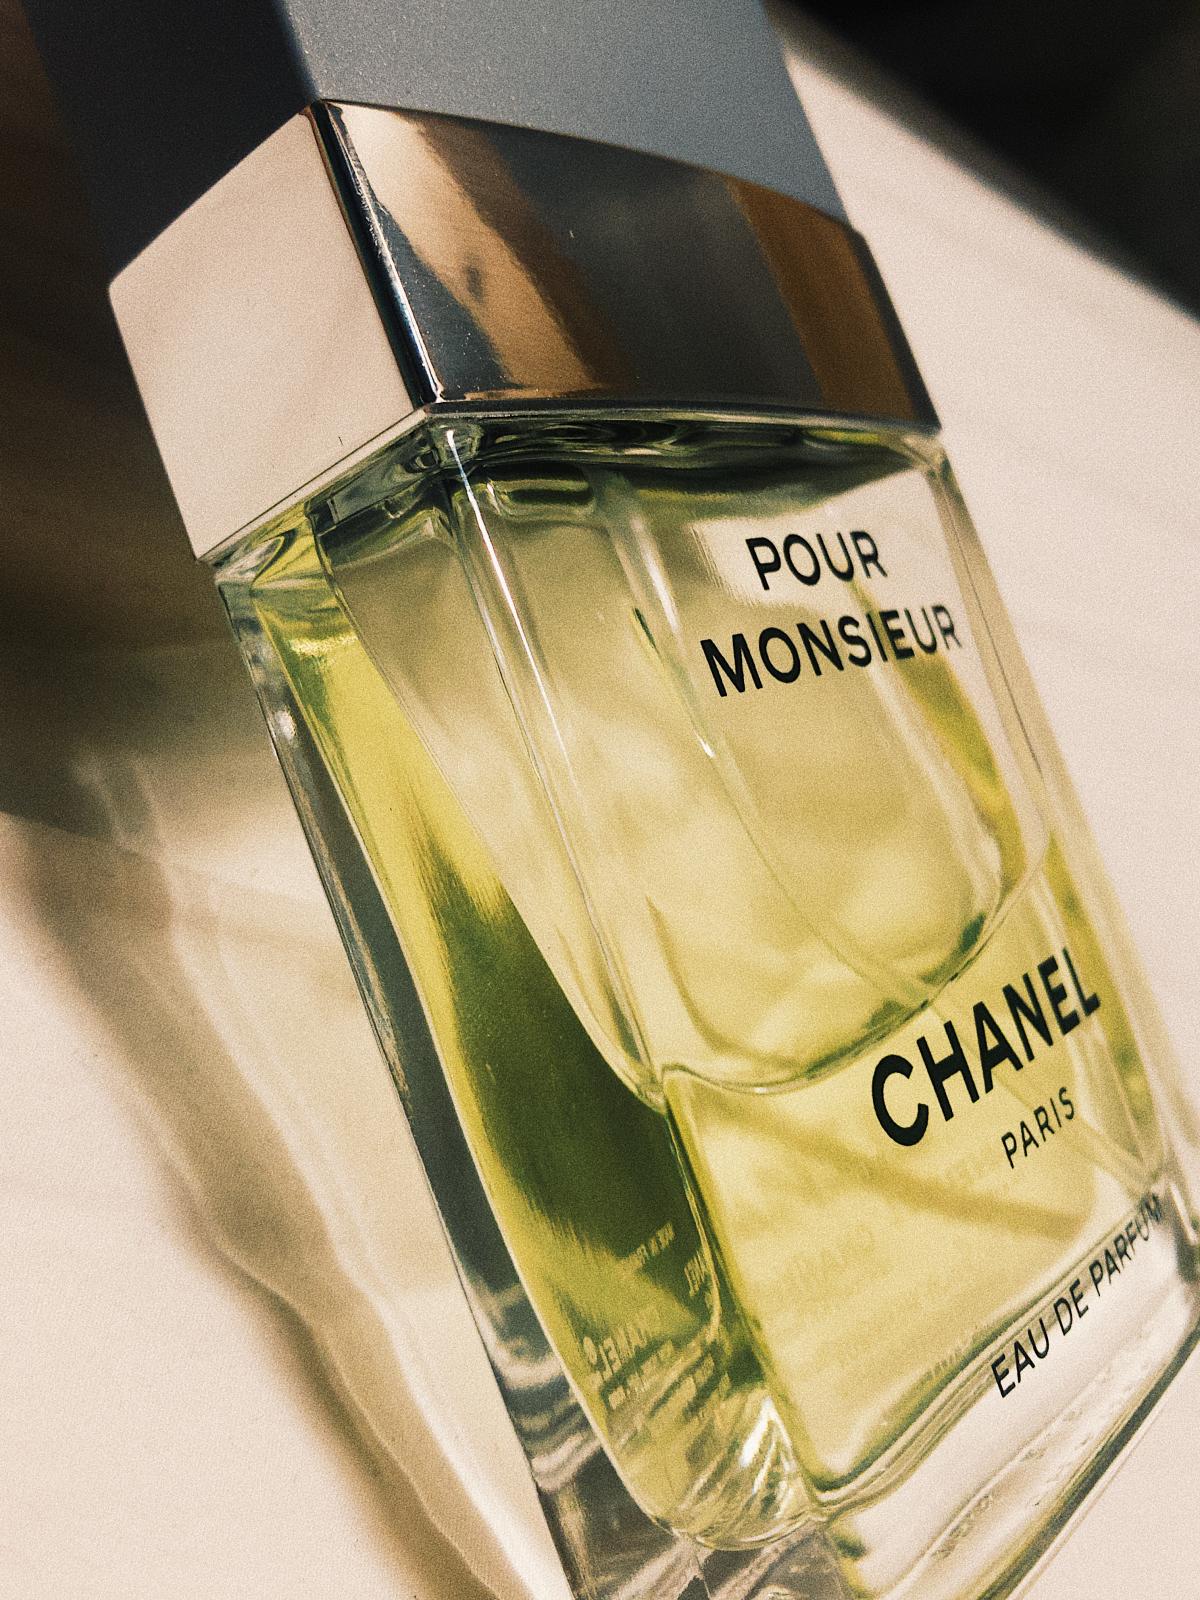 Pour Monsieur Eau de Parfum Chanel Cologne - ein es Parfum für Männer 2016